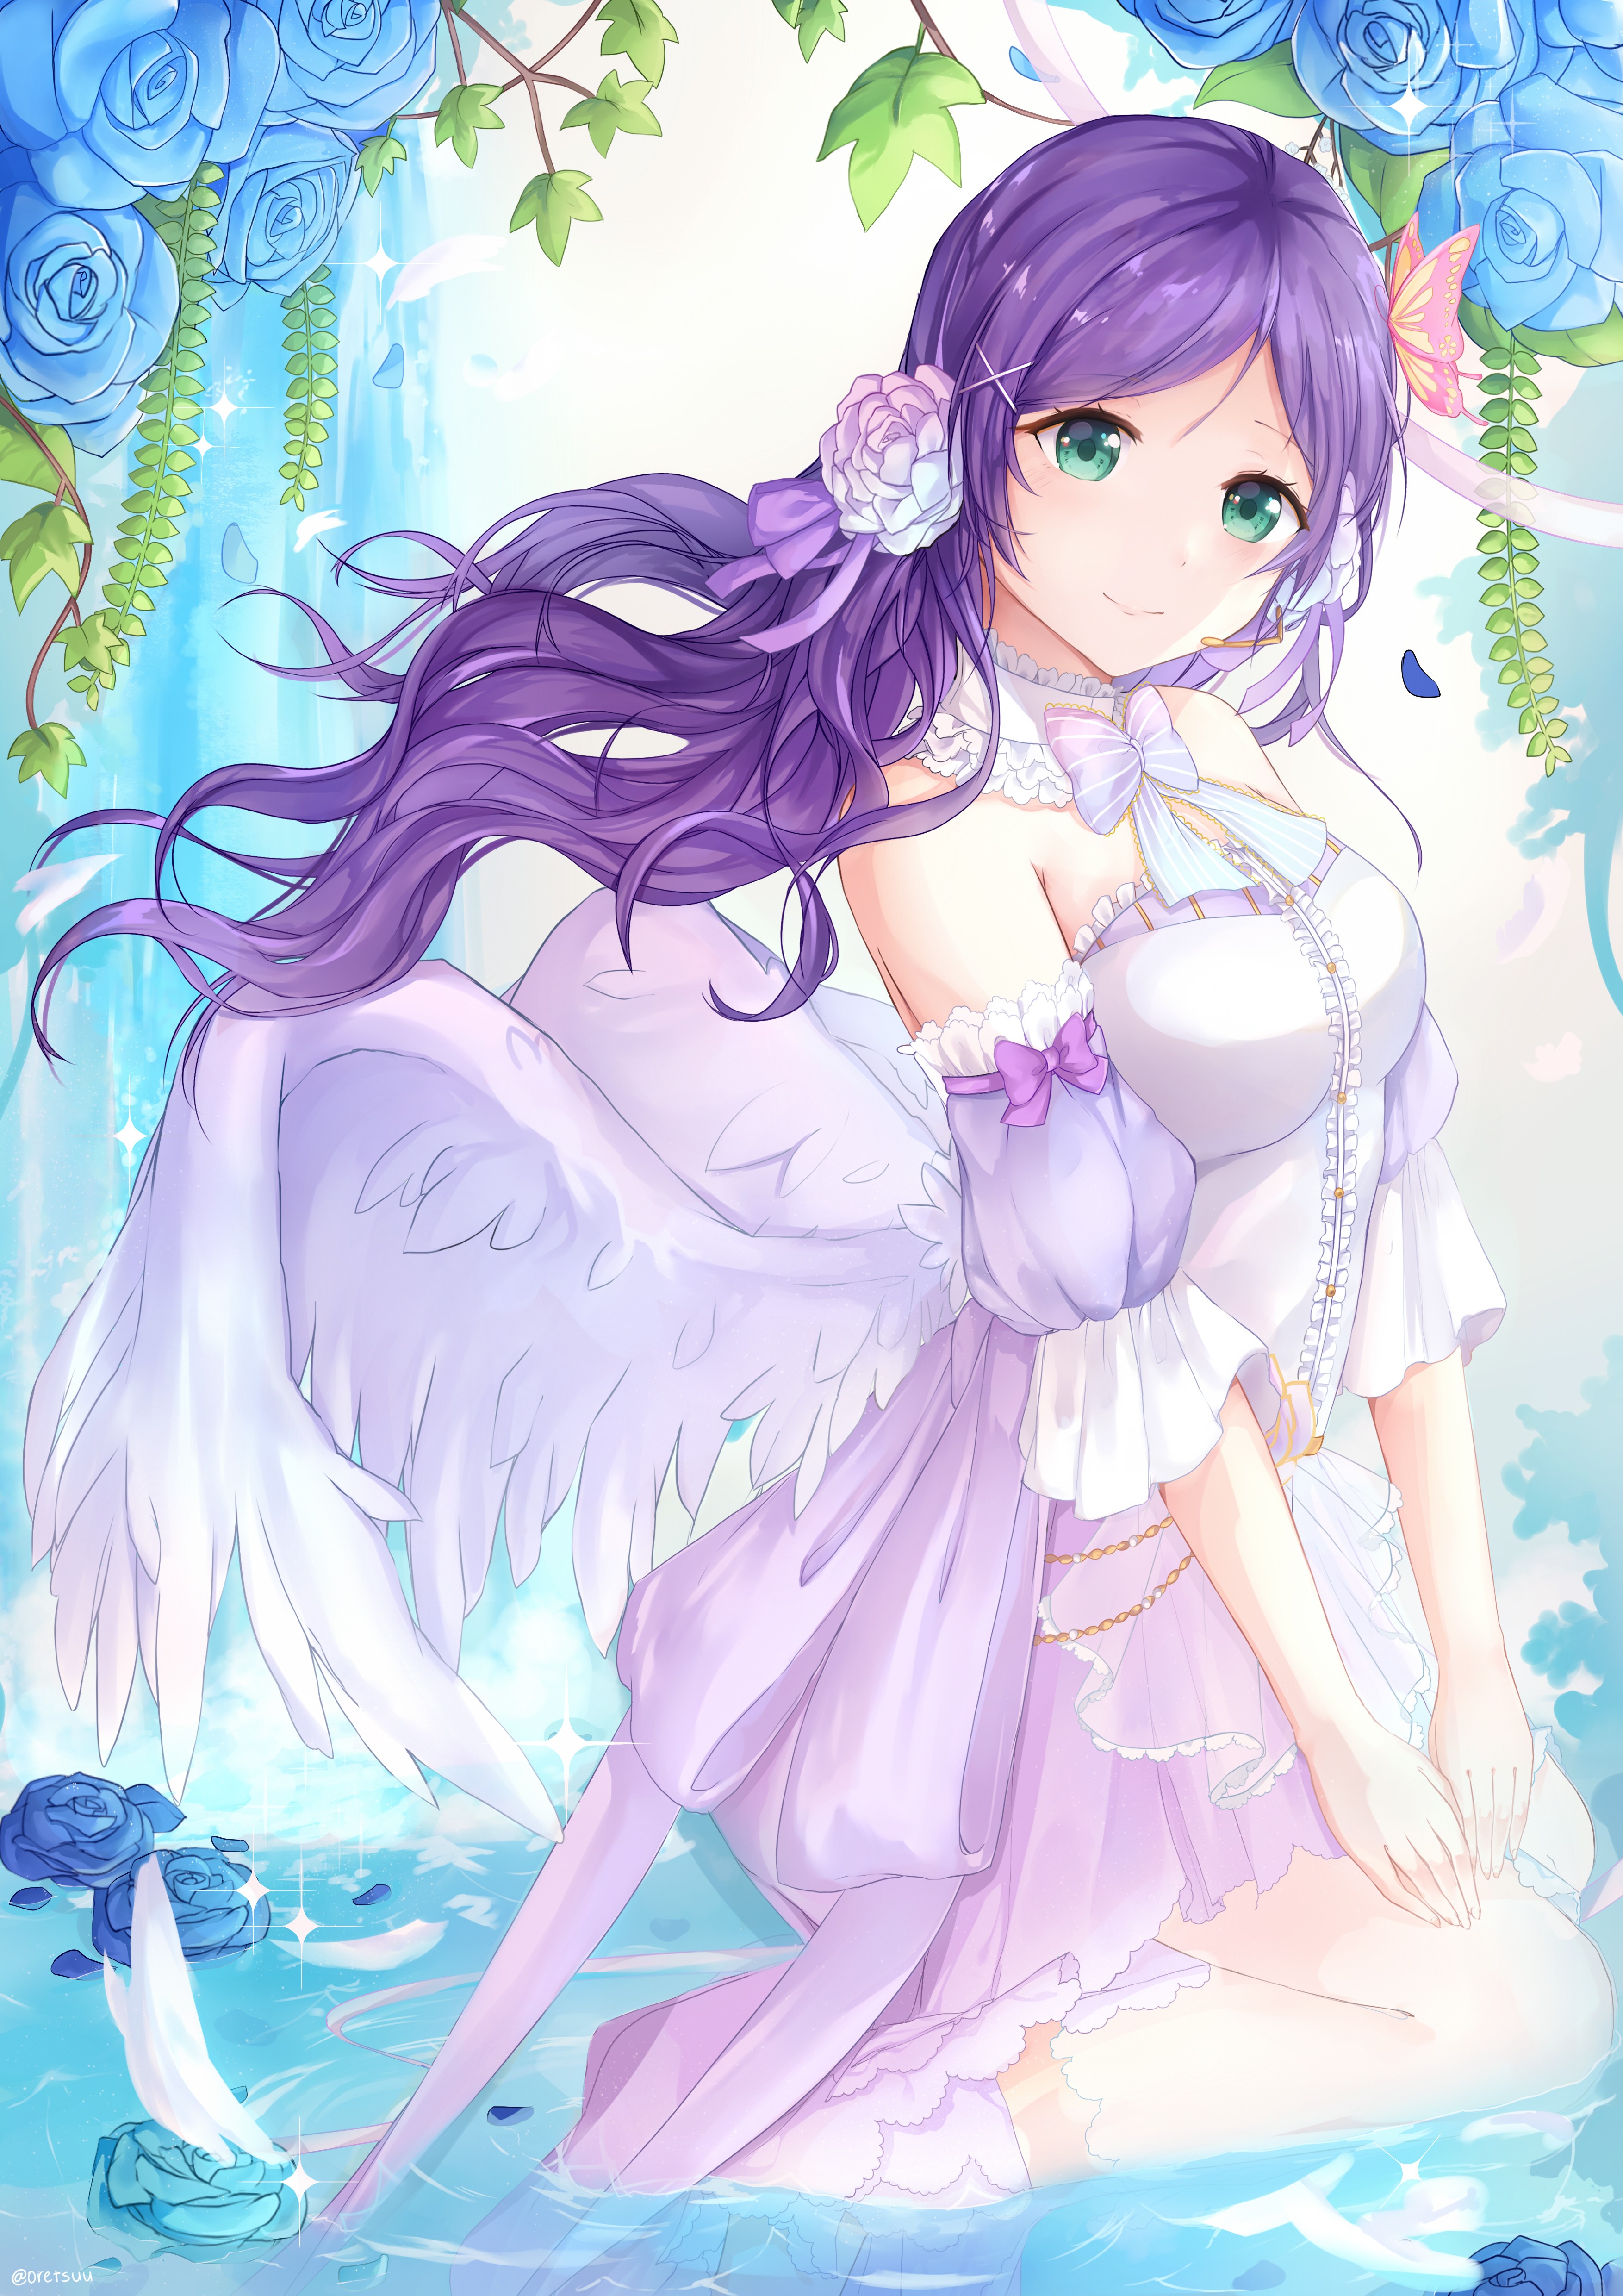 Anime 3507x4960 anime anime girls Toujou Nozomi Love Live! dress wet wings green eyes long hair purple hair flowers Pixiv fantasy art fantasy girl flower in hair